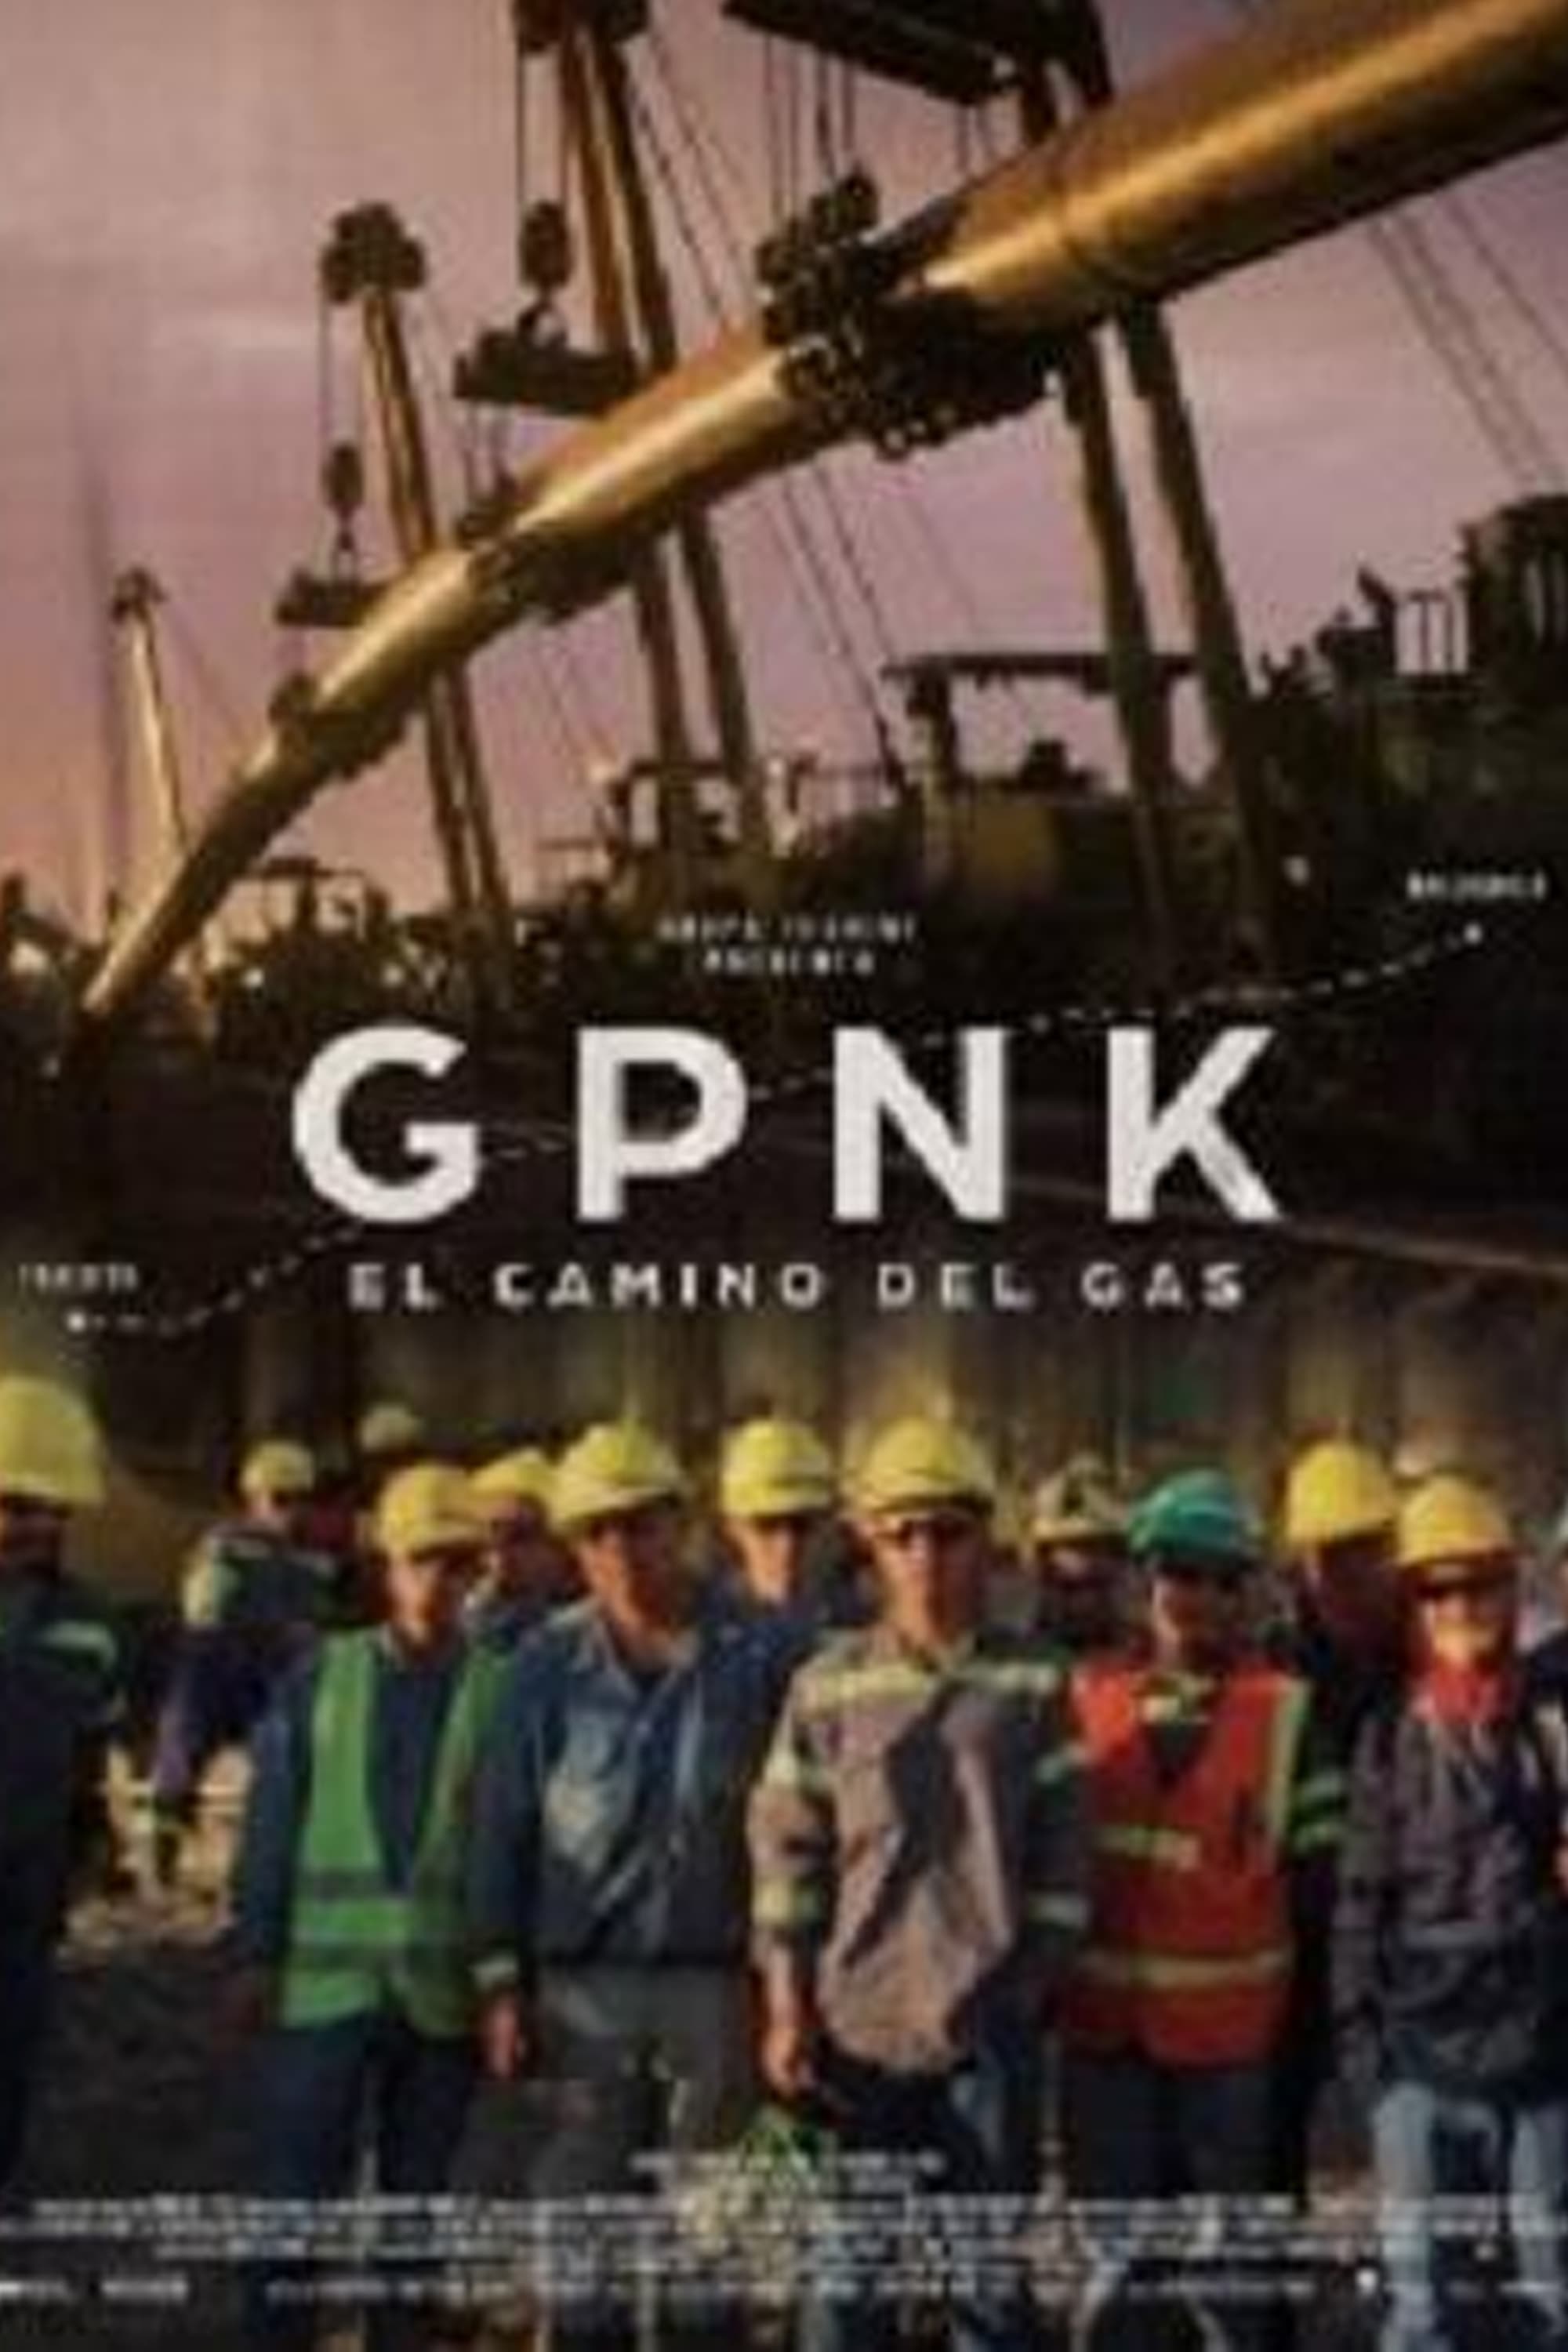 GPNK - El camino del gas